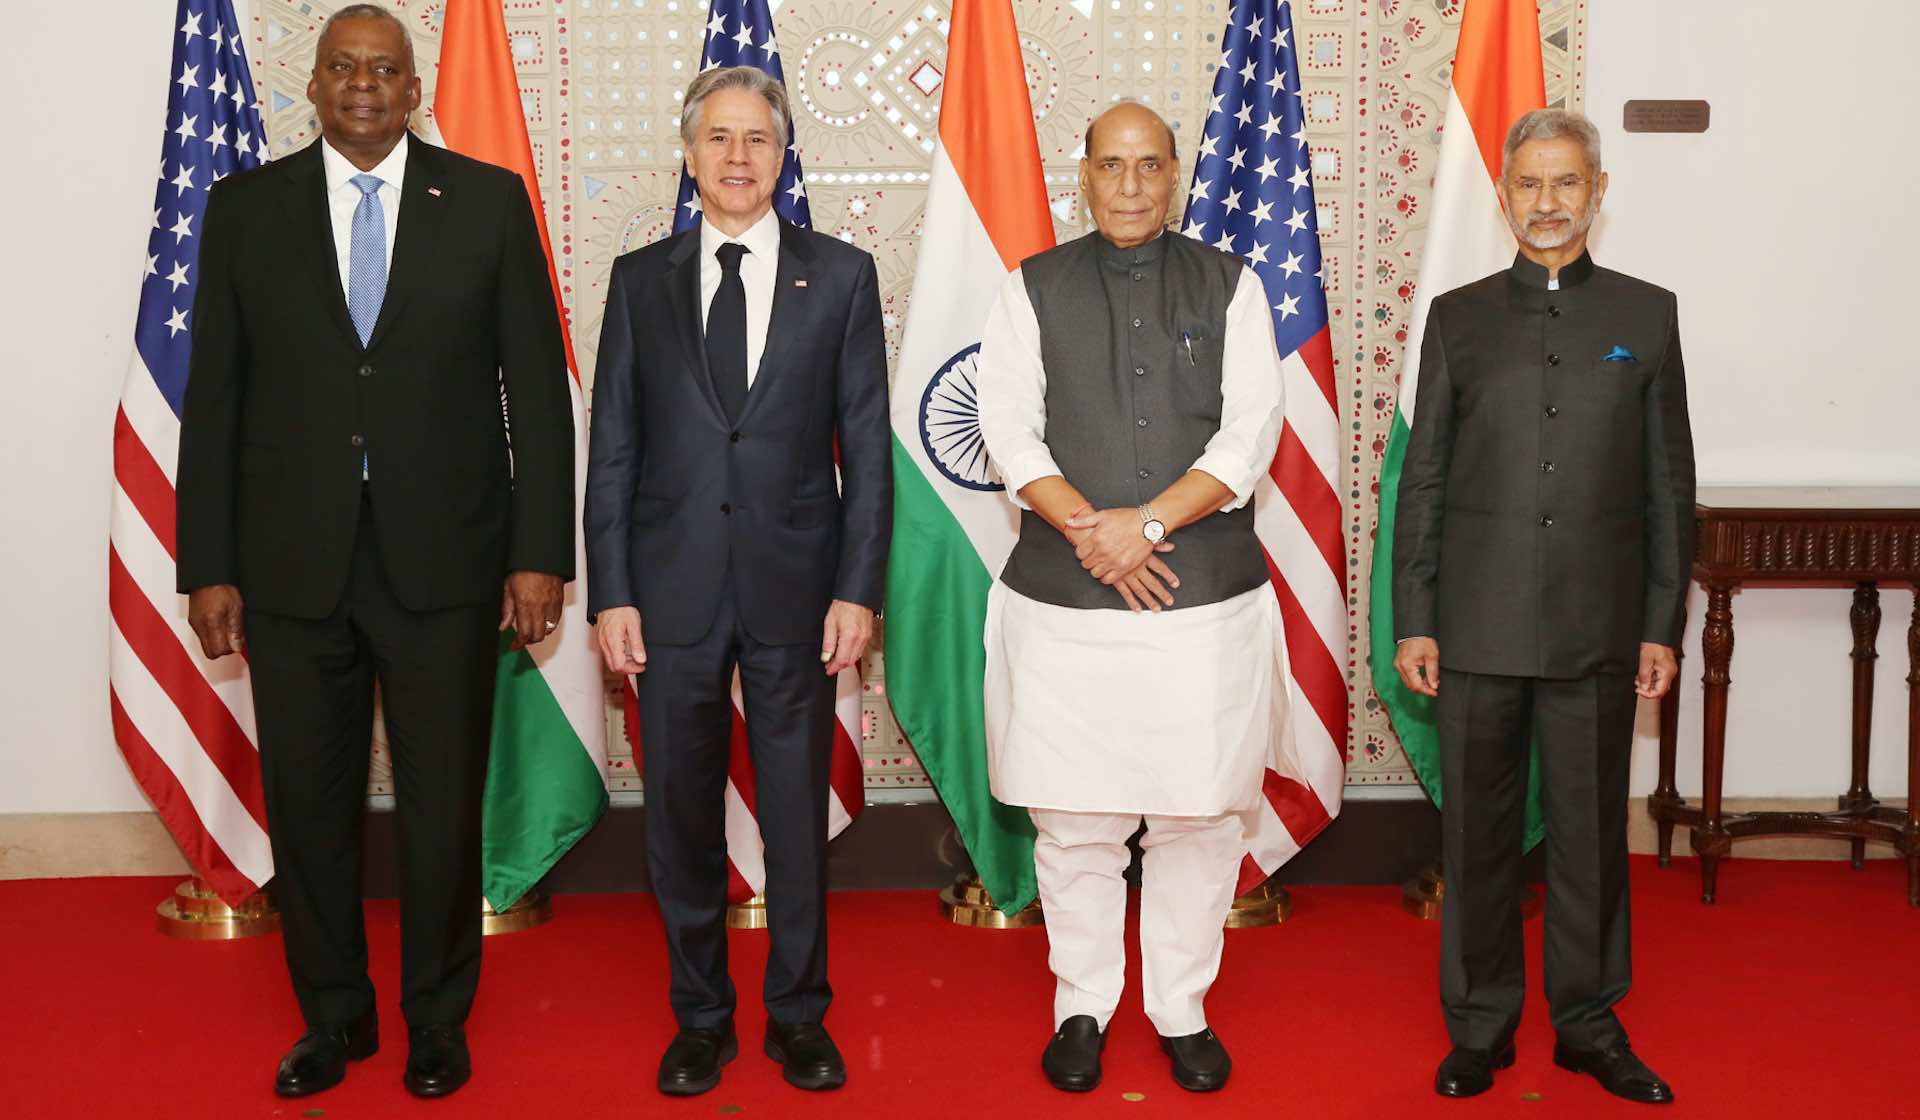 مشارکت استراتژیک هند و ایالات متحده در گفتگوی وزیران 2 به علاوه 2 تقویت شد